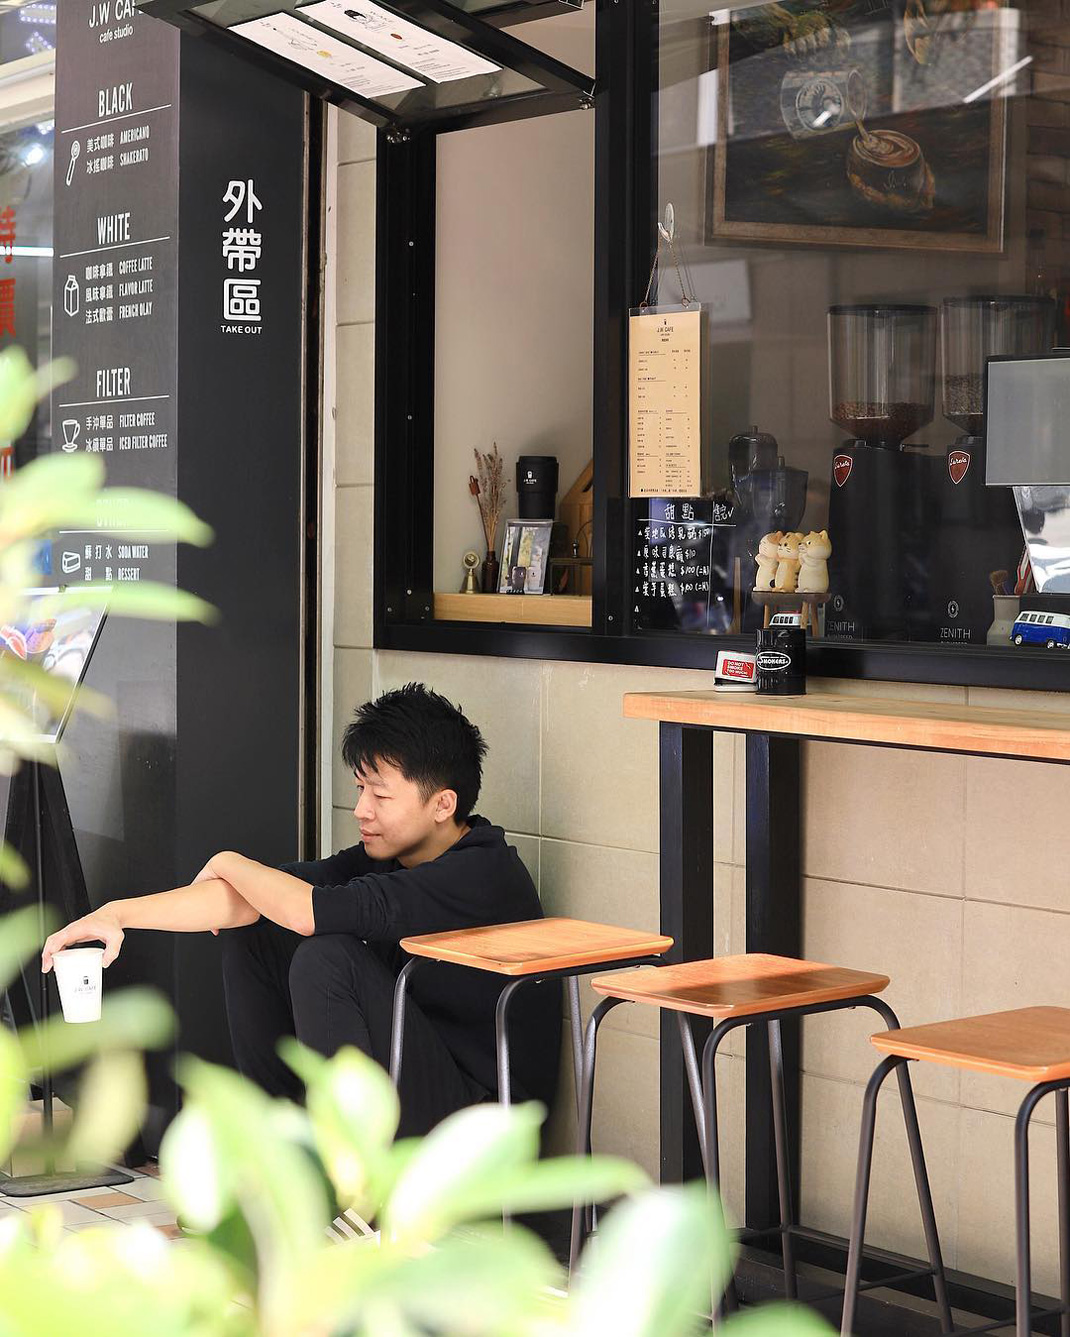 J.W. Cafe咖啡店 台湾 台北 咖啡店 cafe logo设计 vi设计 空间设计